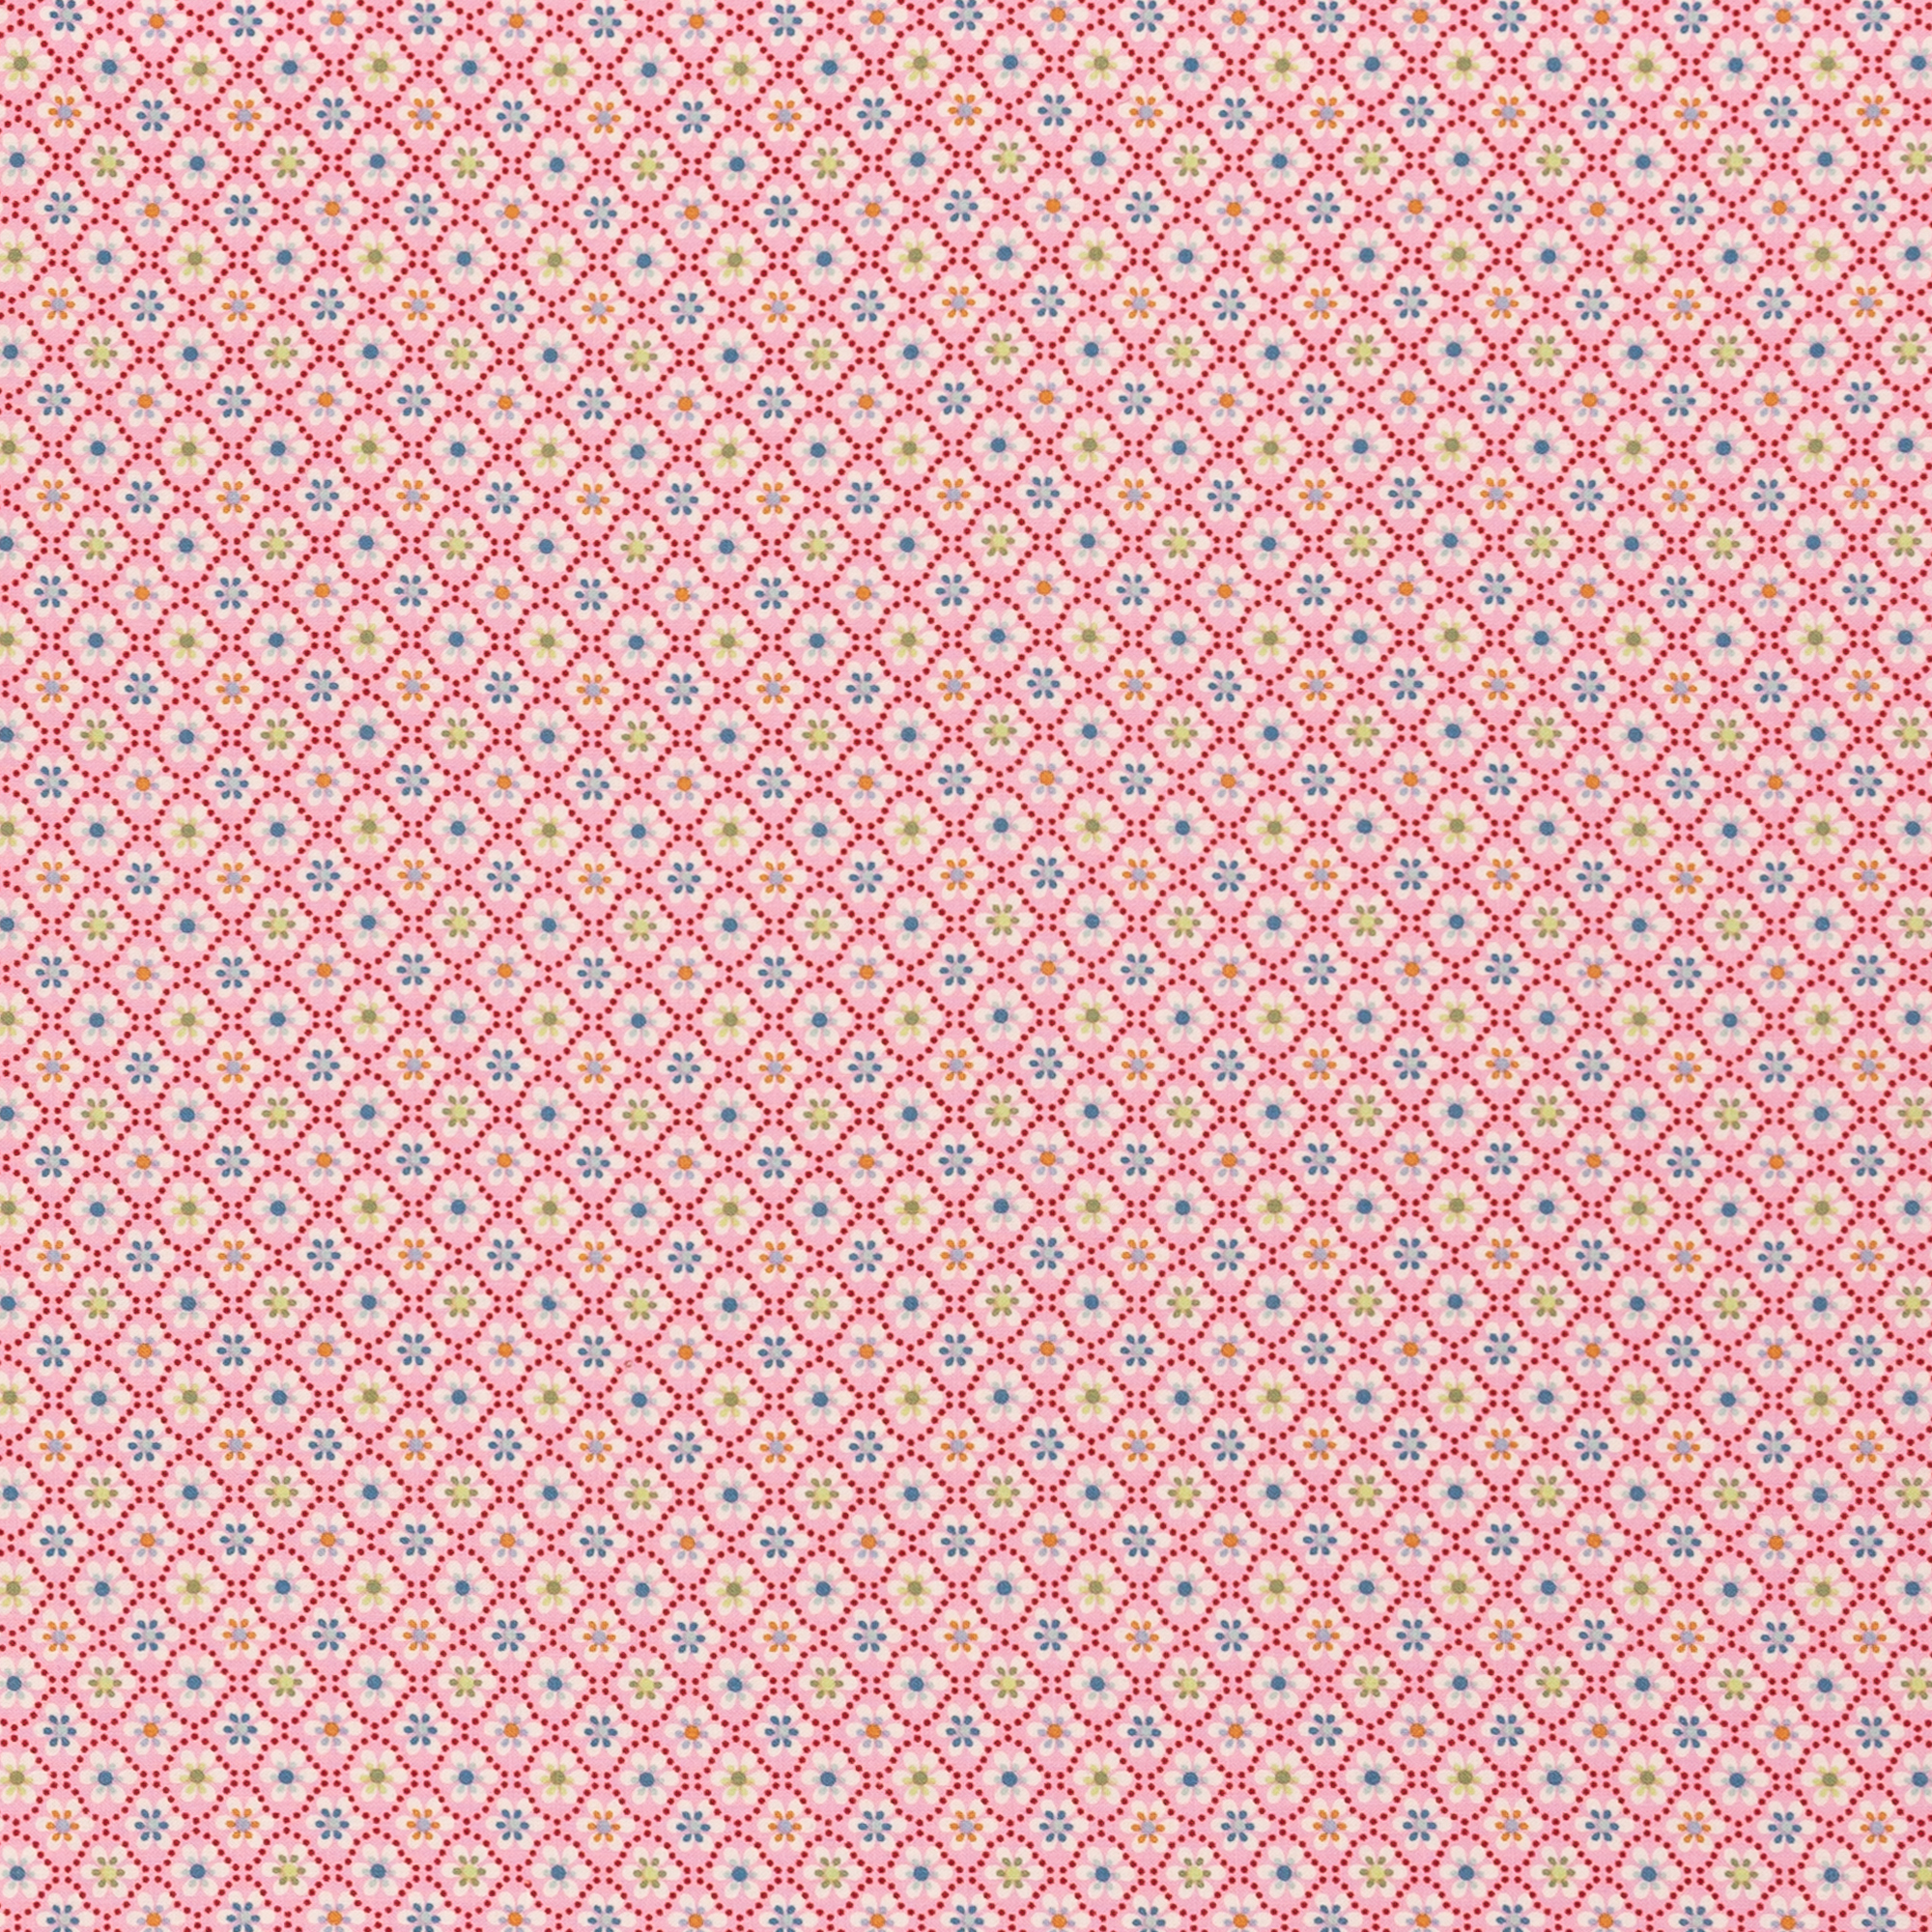 Bild von Baumwollstoff bedruckt rosa, weiß